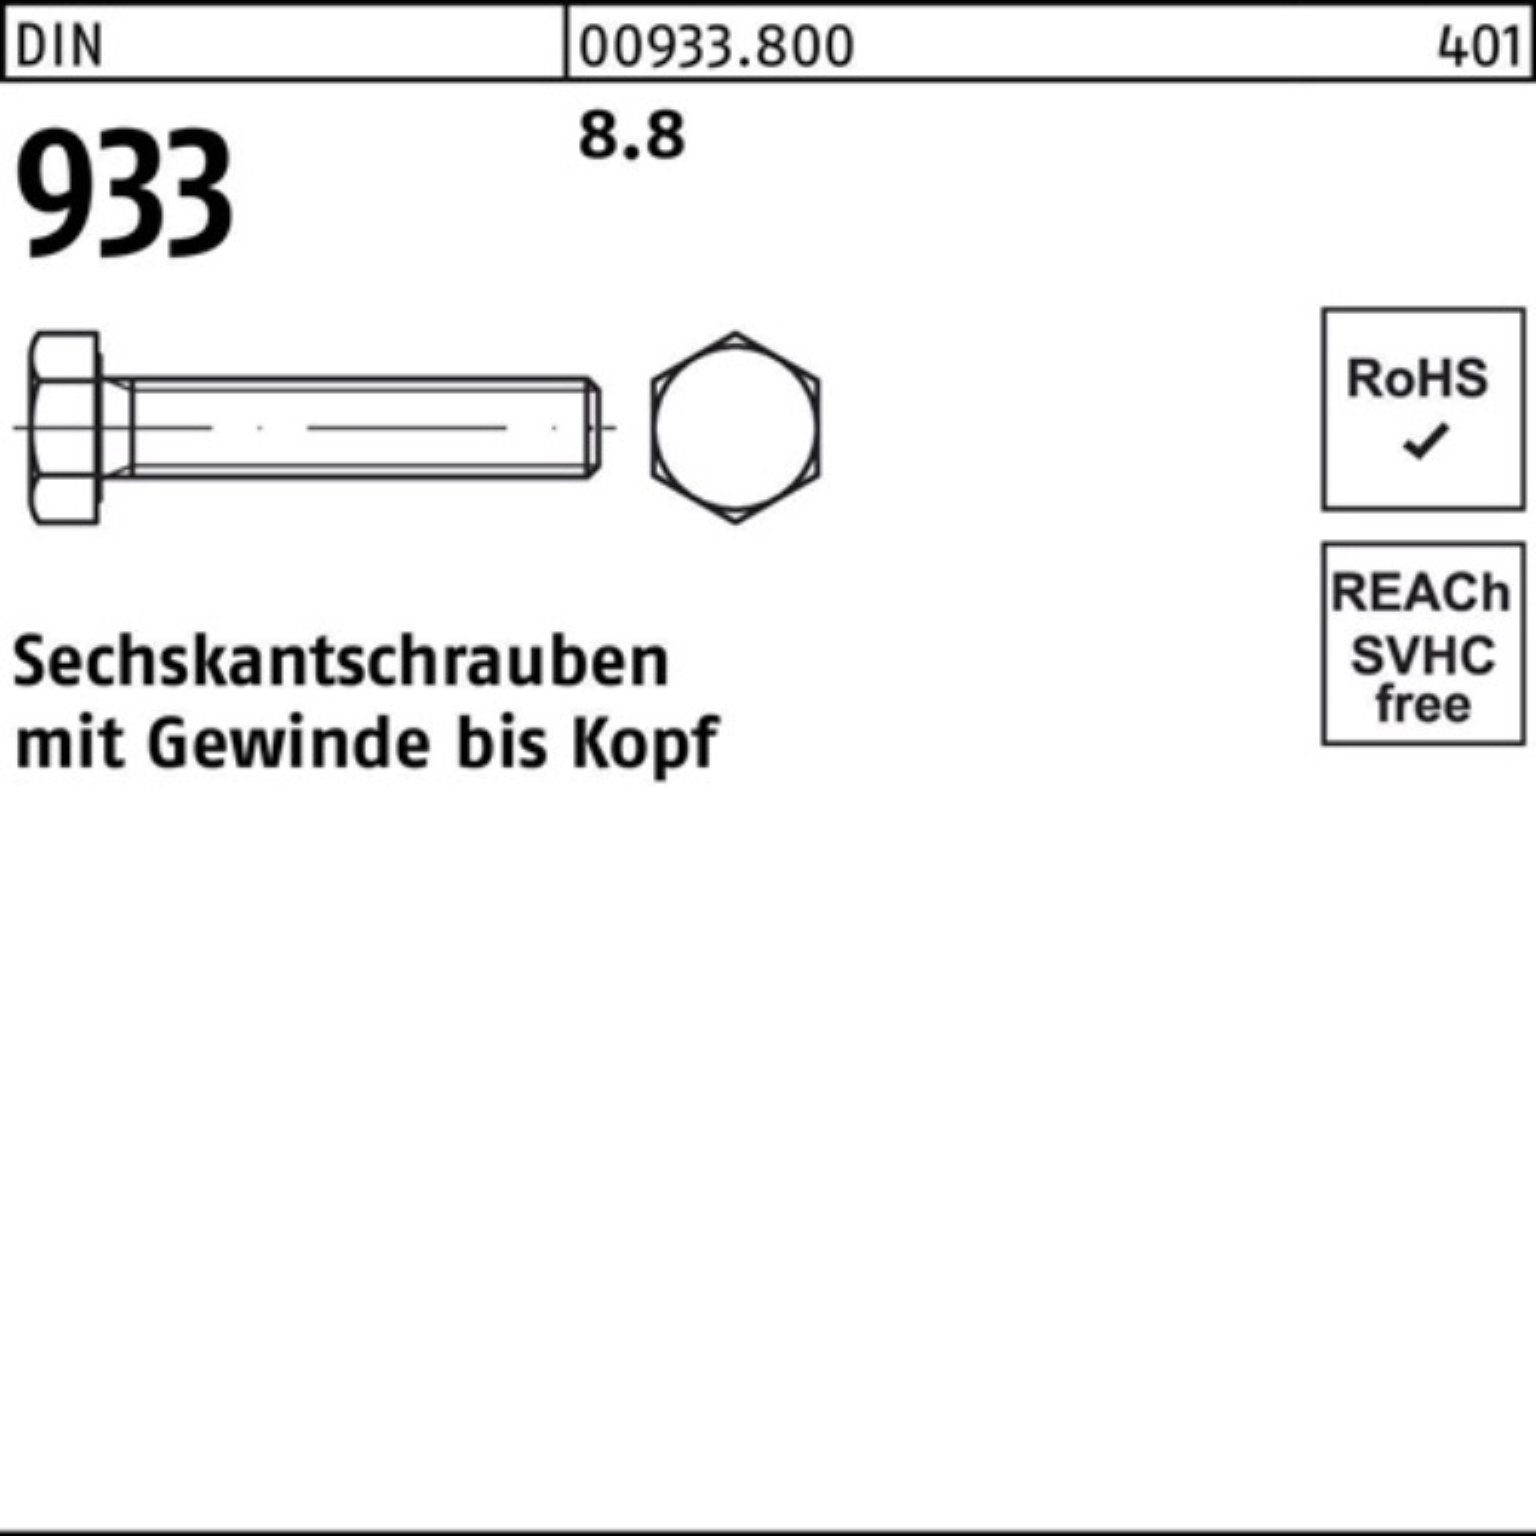 Sechskantschraube DIN Stück M8x 933 90 DIN 100er Pack Sechskantschraube 8.8 VG 100 Reyher 933